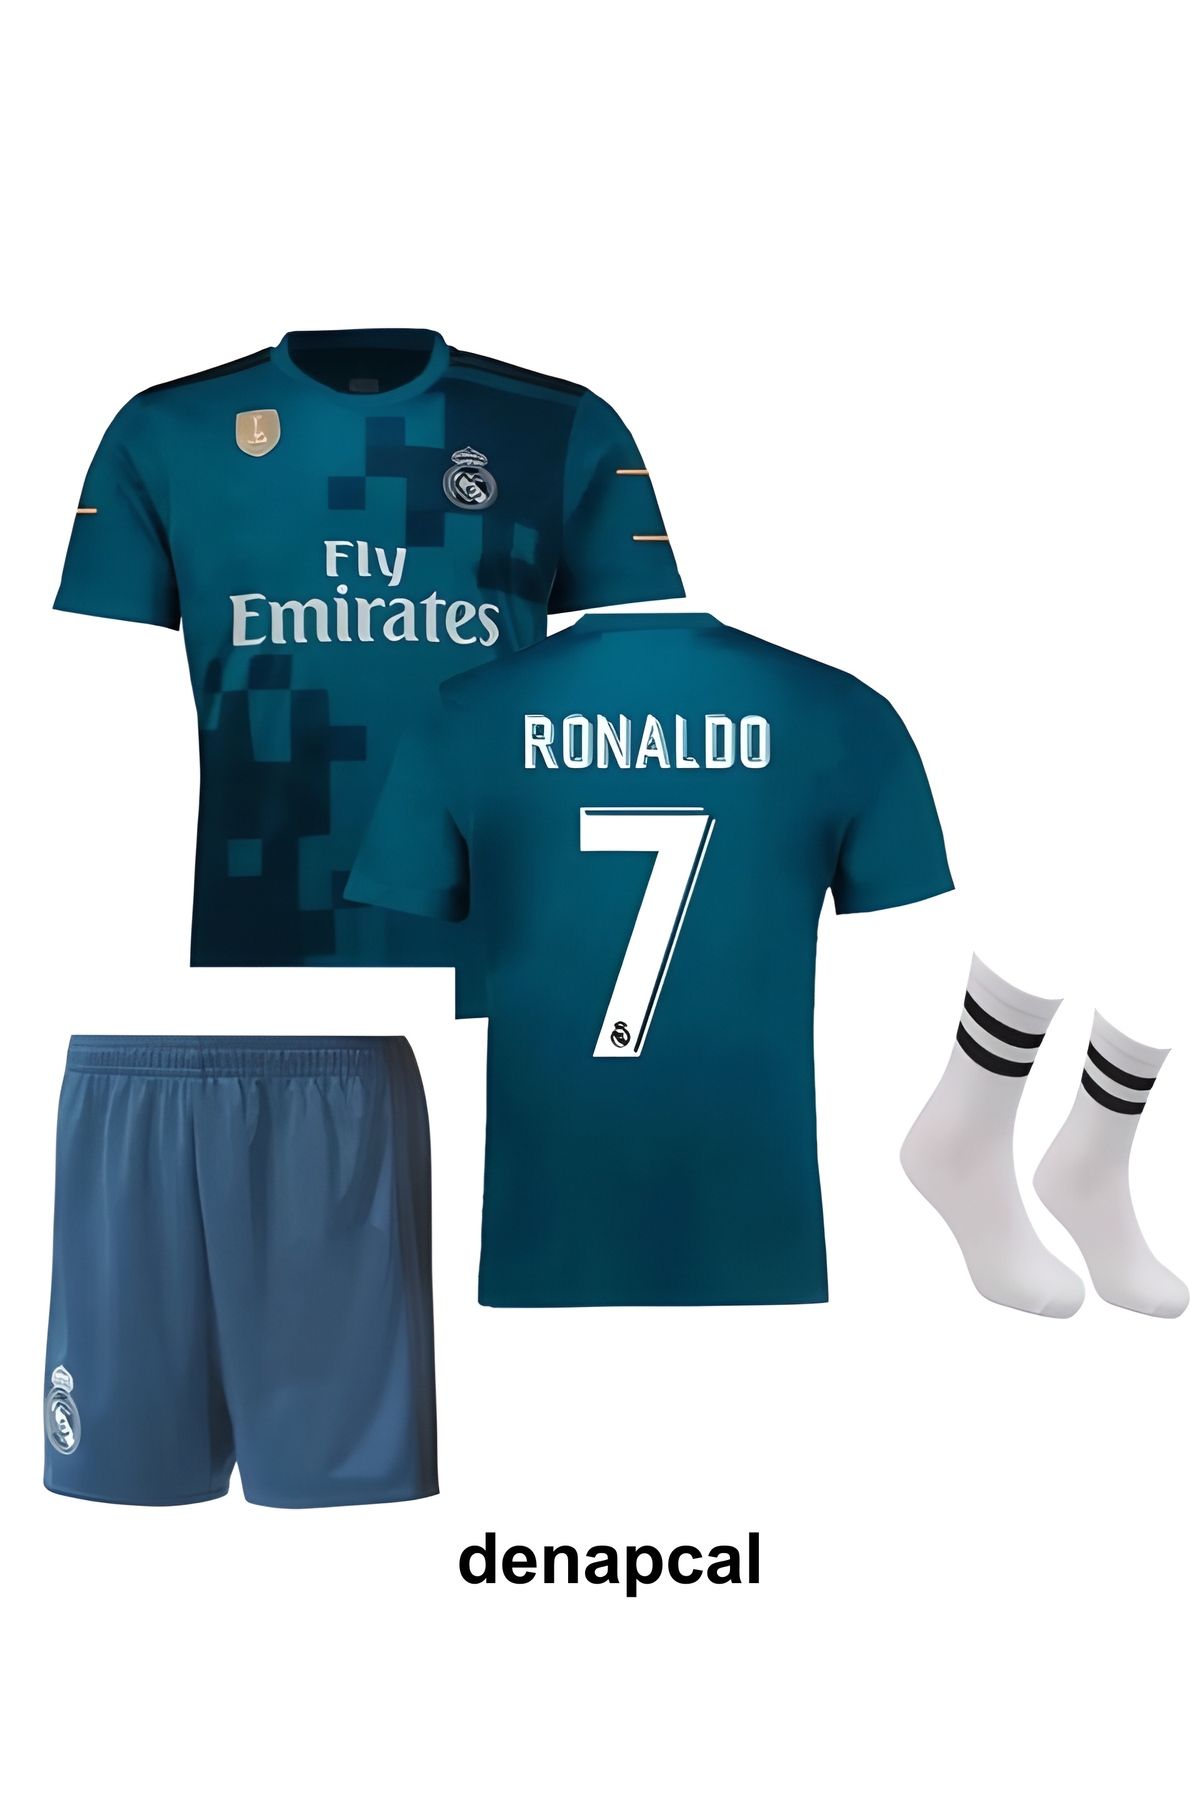 DENAPCAL Ronaldo Turkuaz 7 Real Madrid 2018 Hala Madrid Deplasman 3'lü Çoçuk Futbol Forma Seti